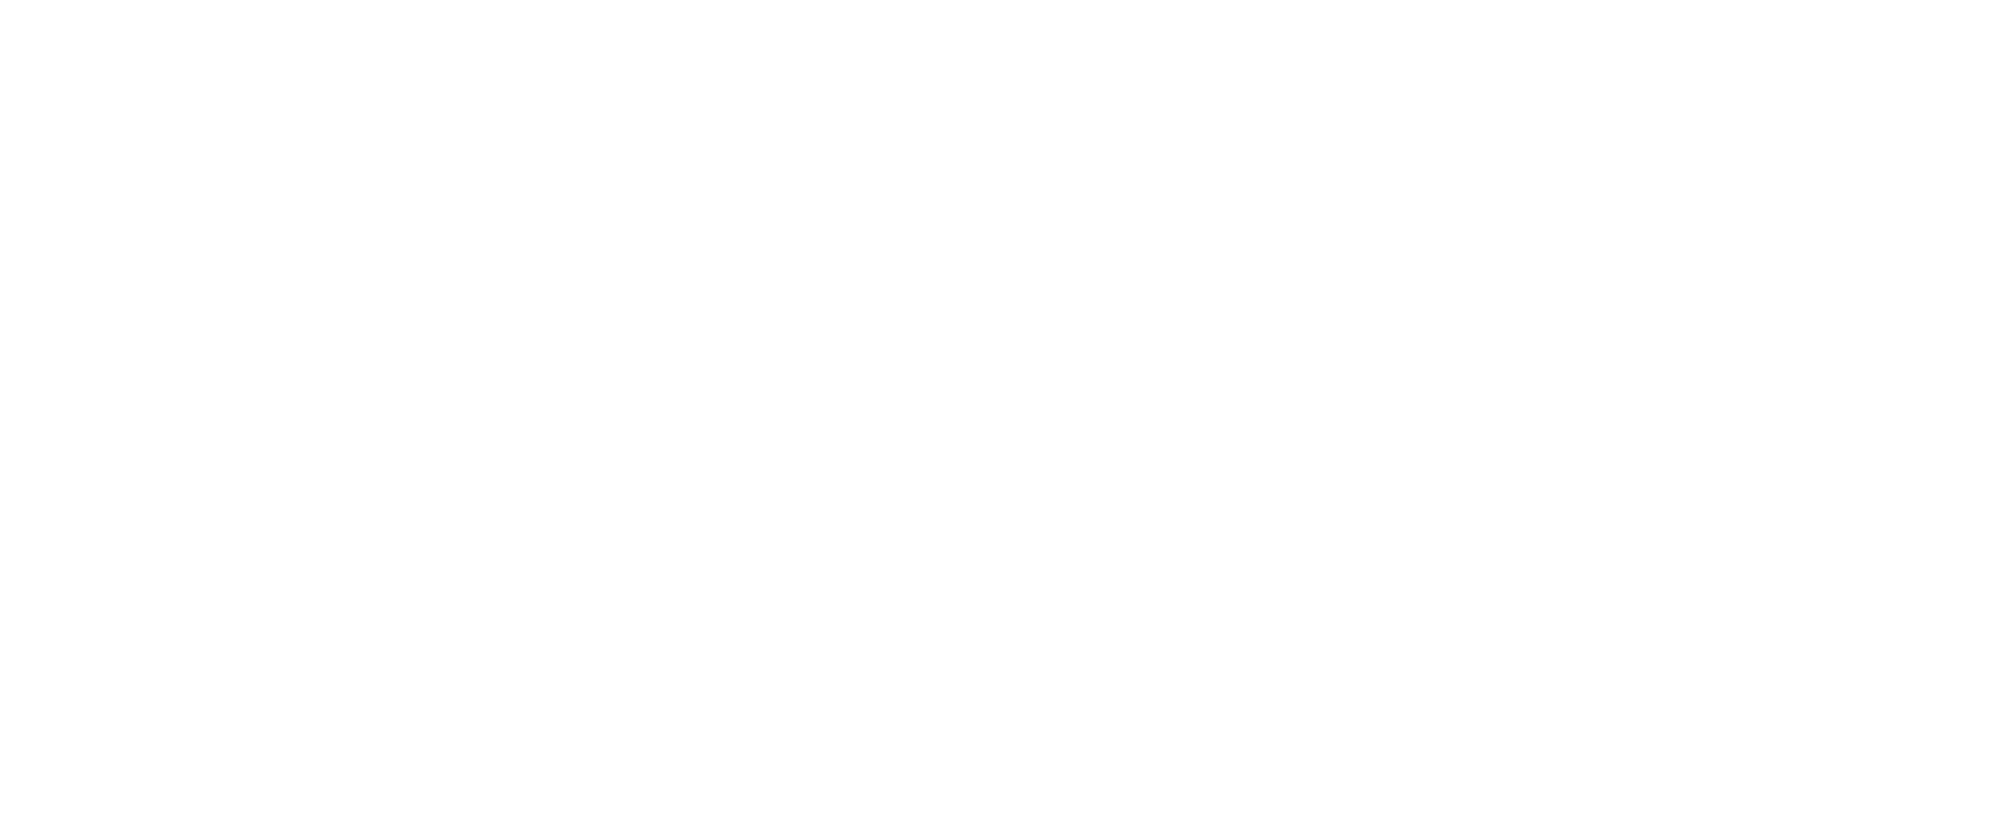 Brand Media Advertiser